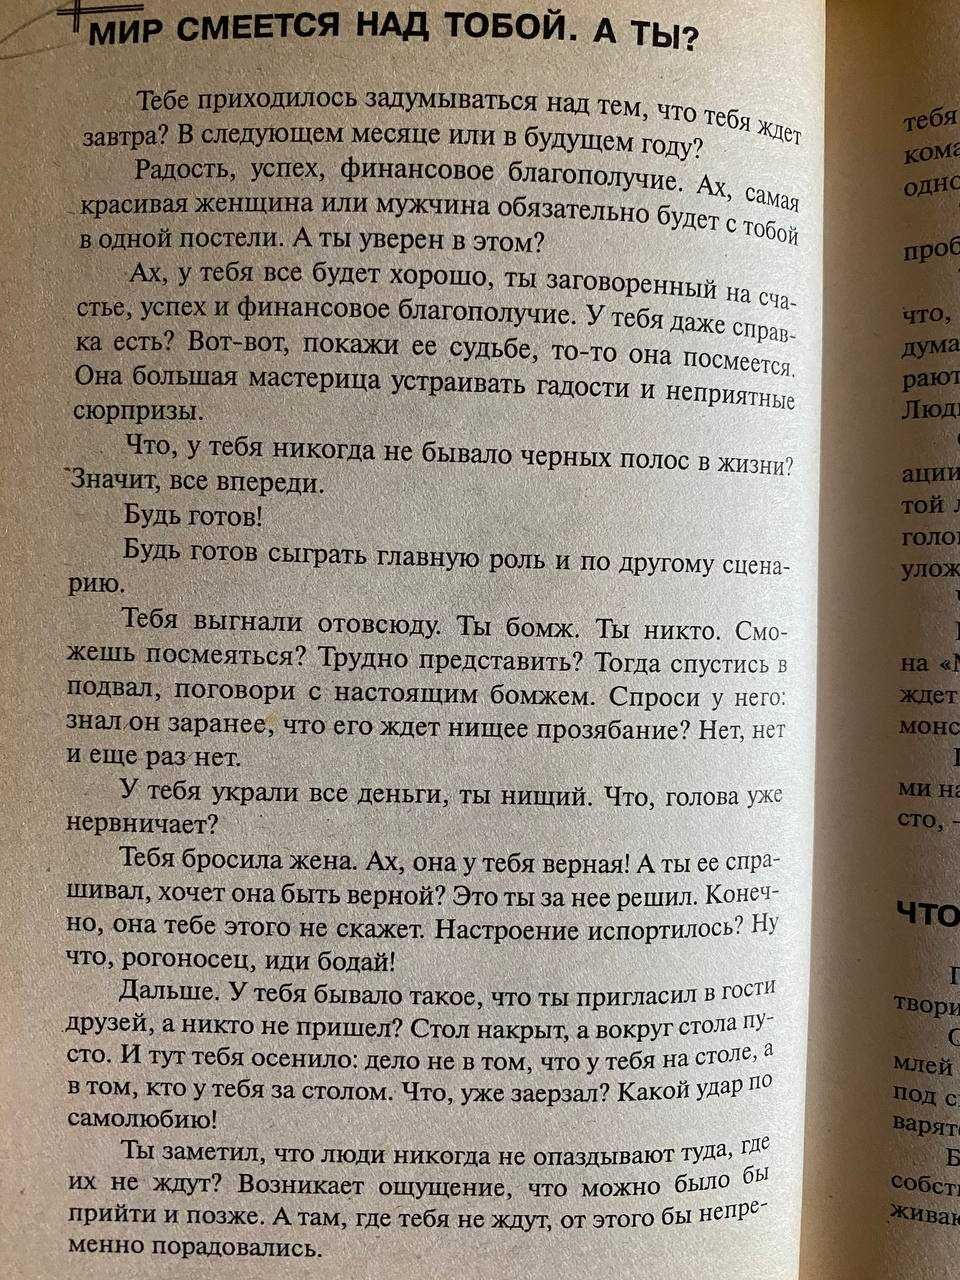 Книга "Научи себя смеяться" Игорь Вагин, популярная психология